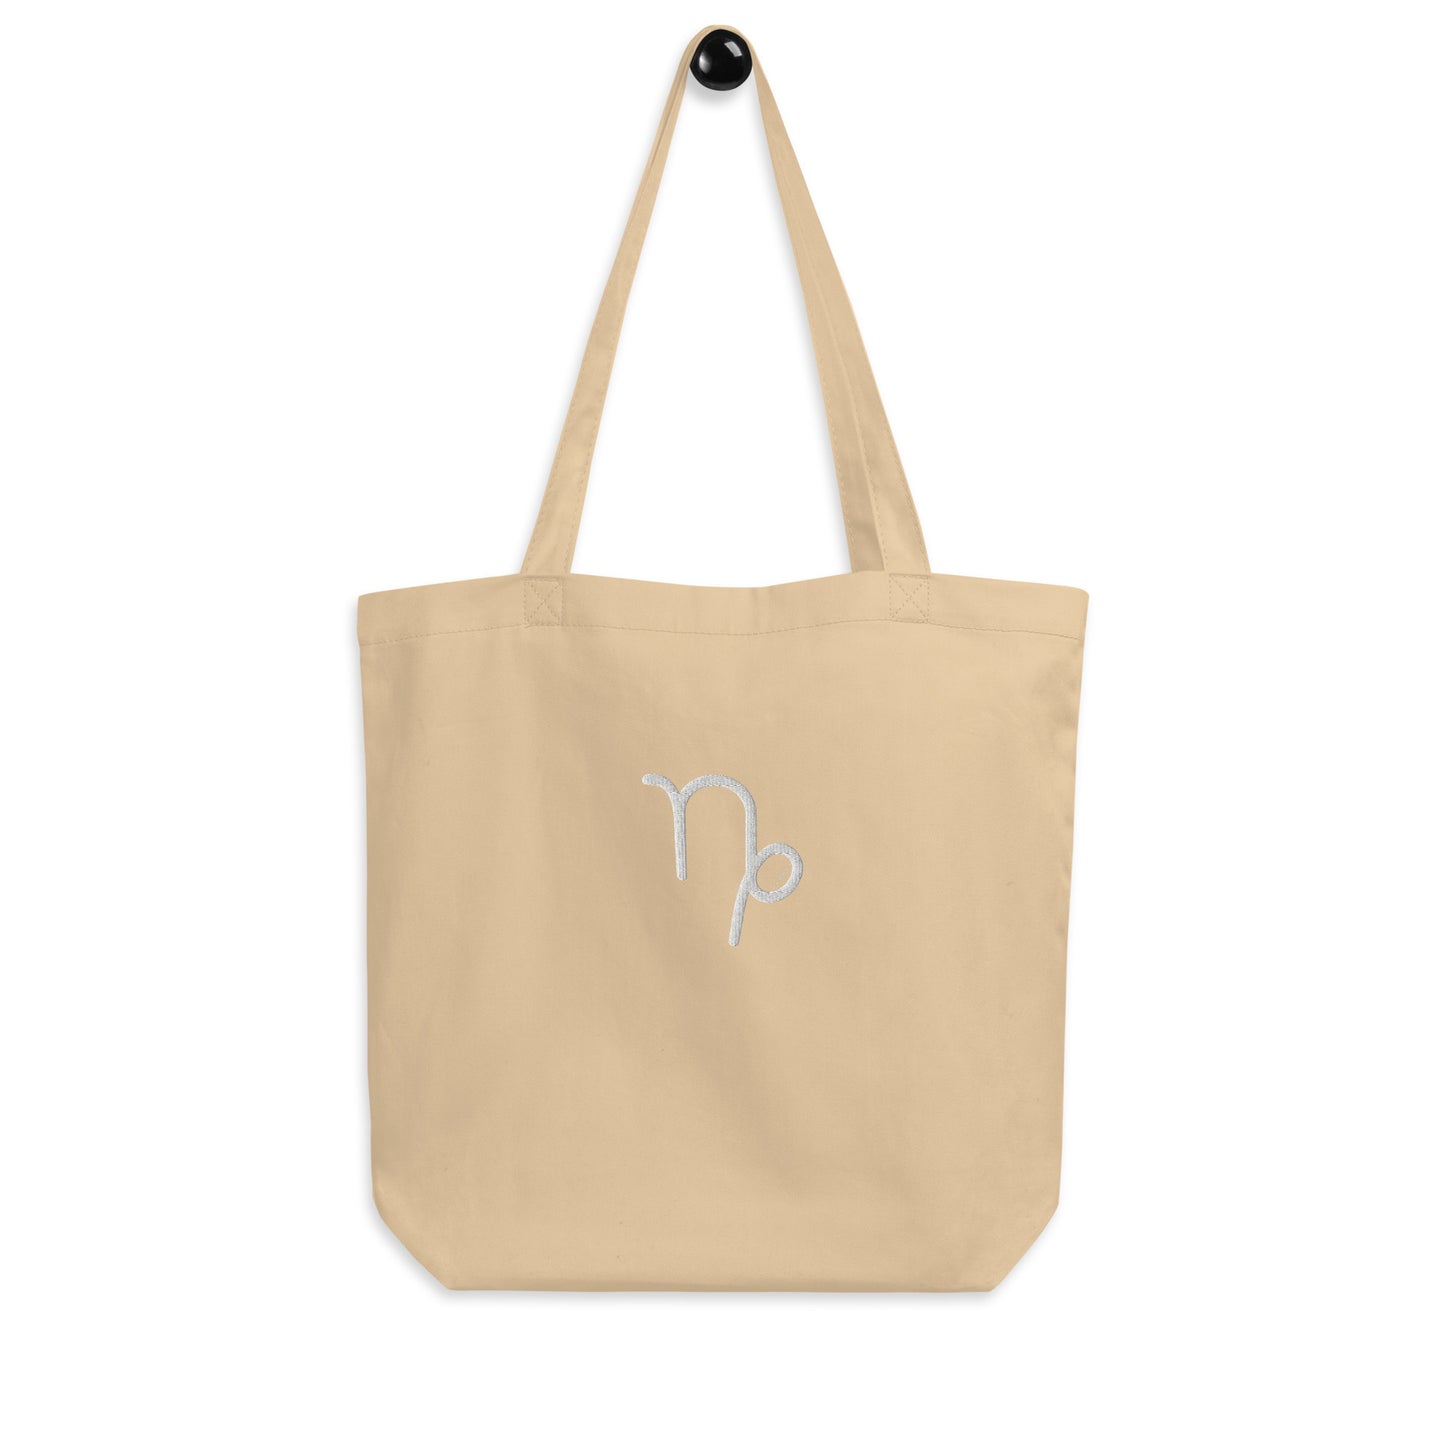 Capricorn - Small Open Tote Bag - White Thread